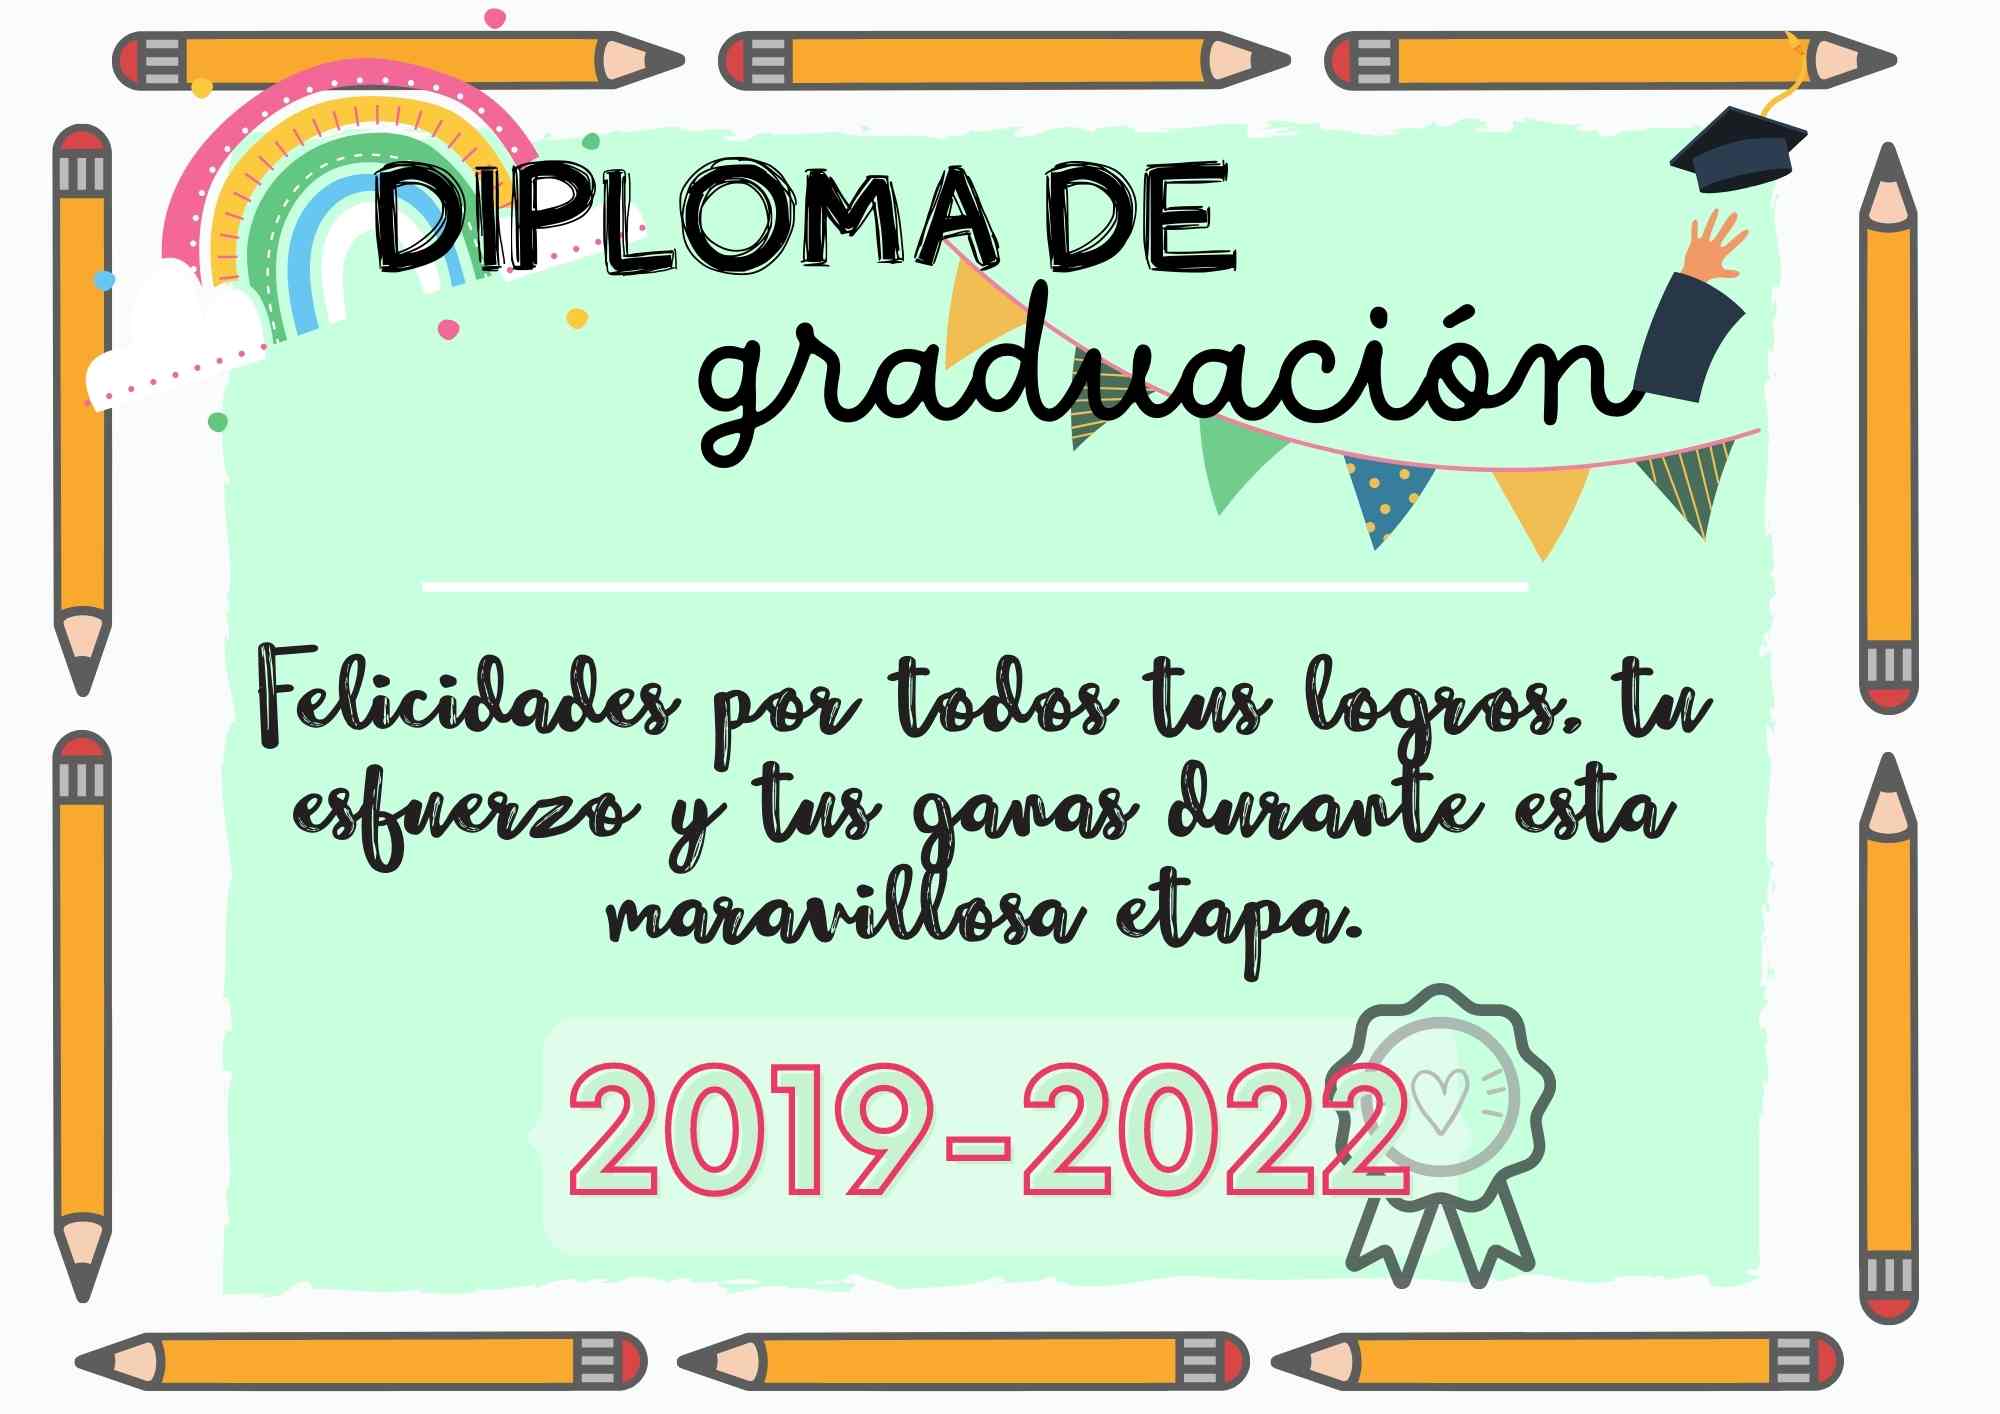 DIPLOMAS GRADUACIÓN 2019-2022